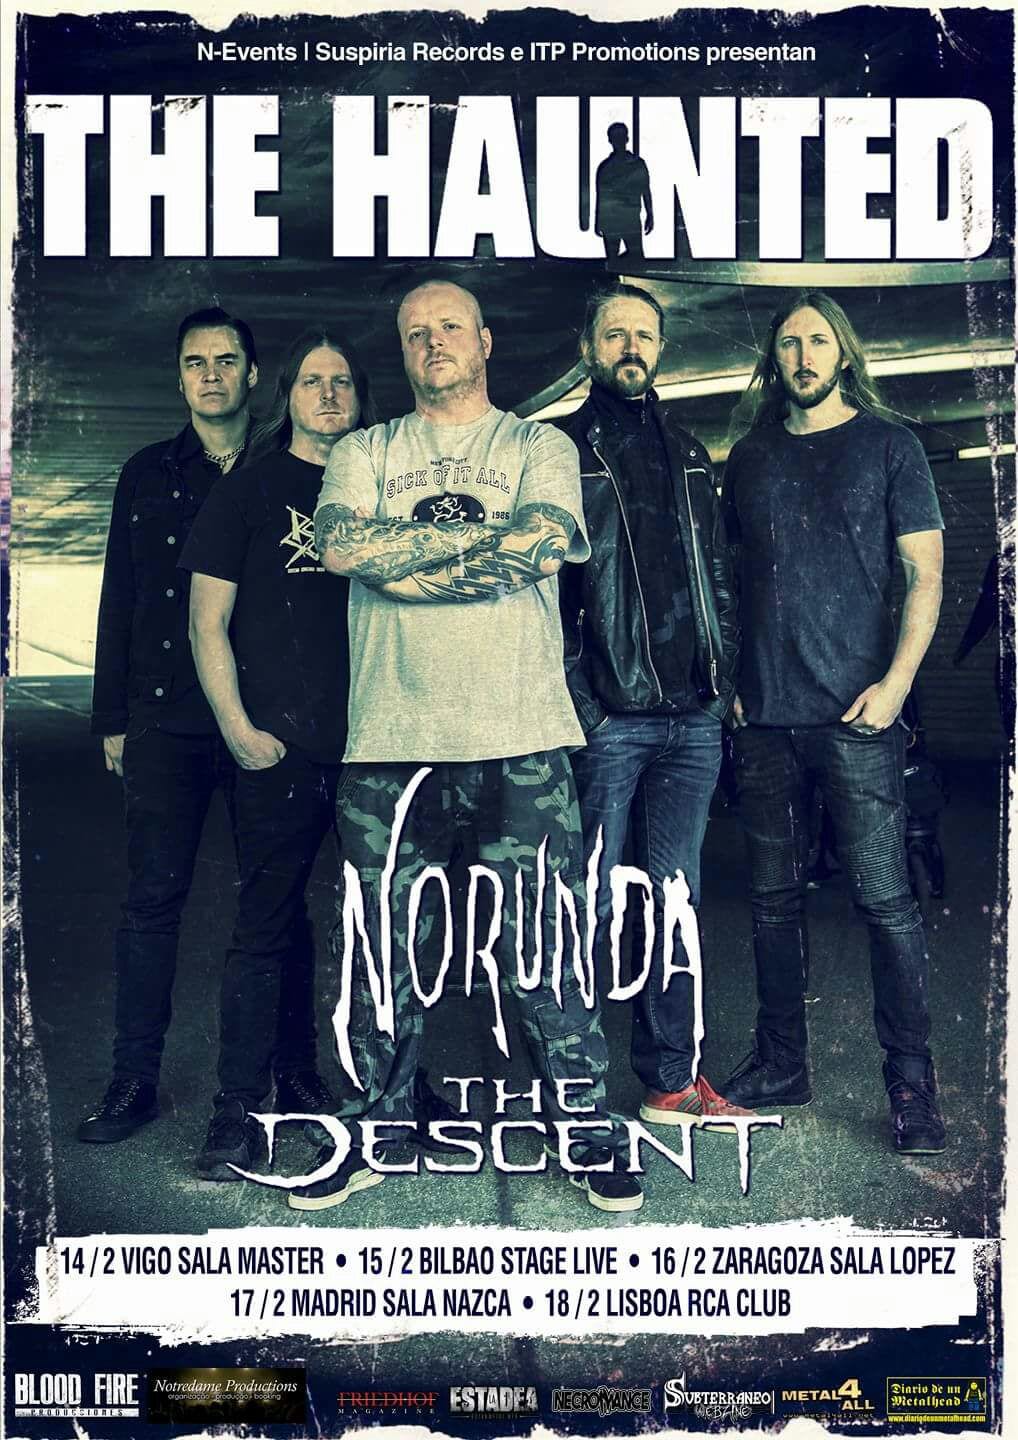 The Haunted + Norunda + The Descent